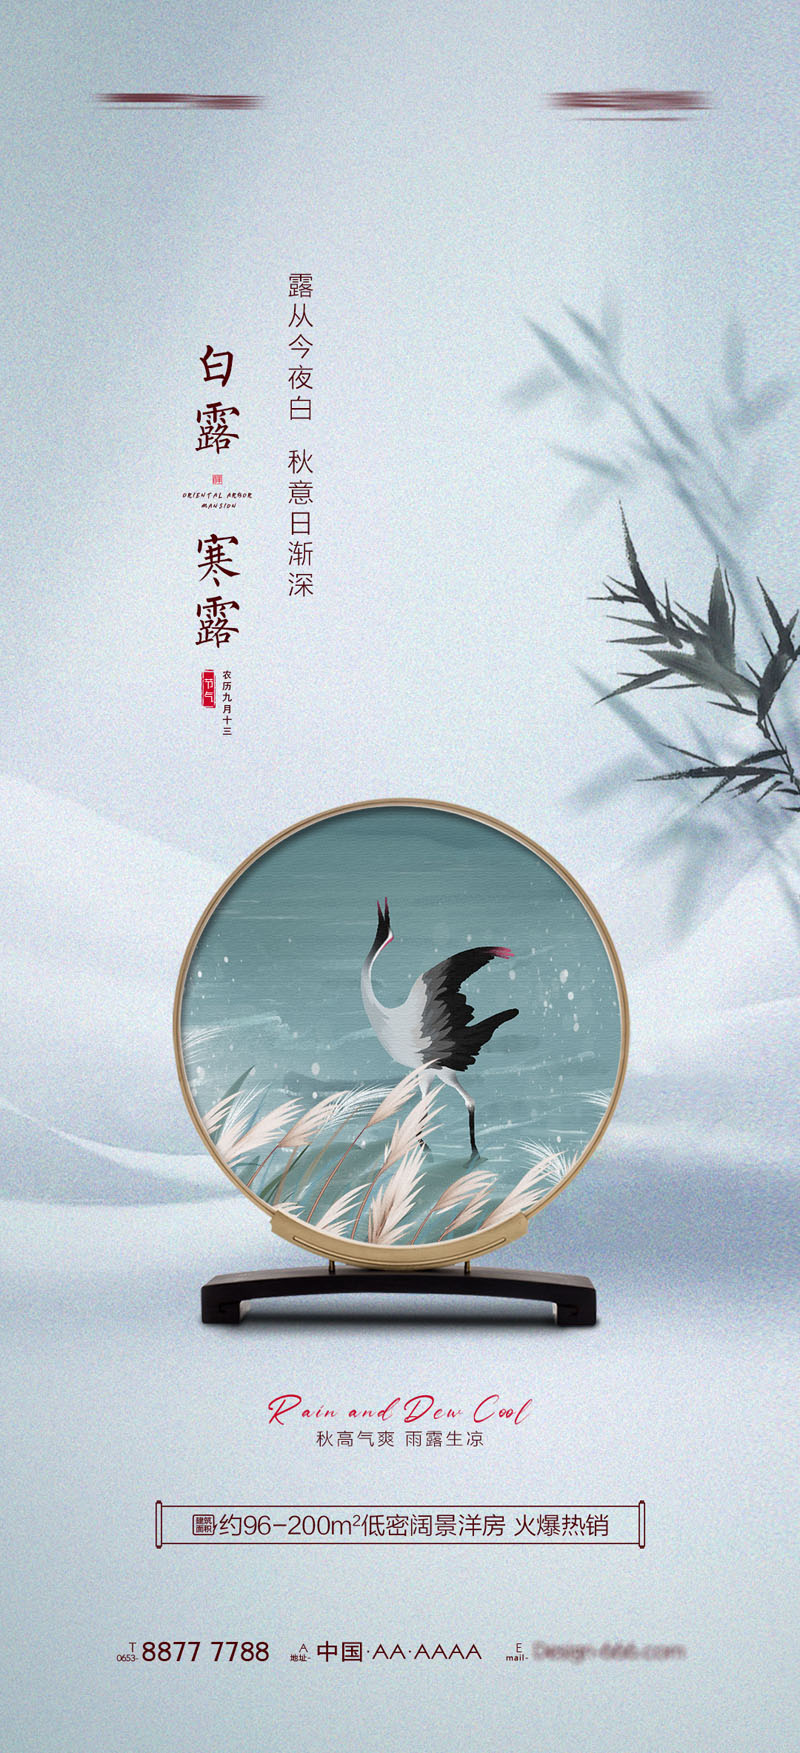 94款中国传统二十四节气之寒露节日海报PSD模板 设计素材 第2张